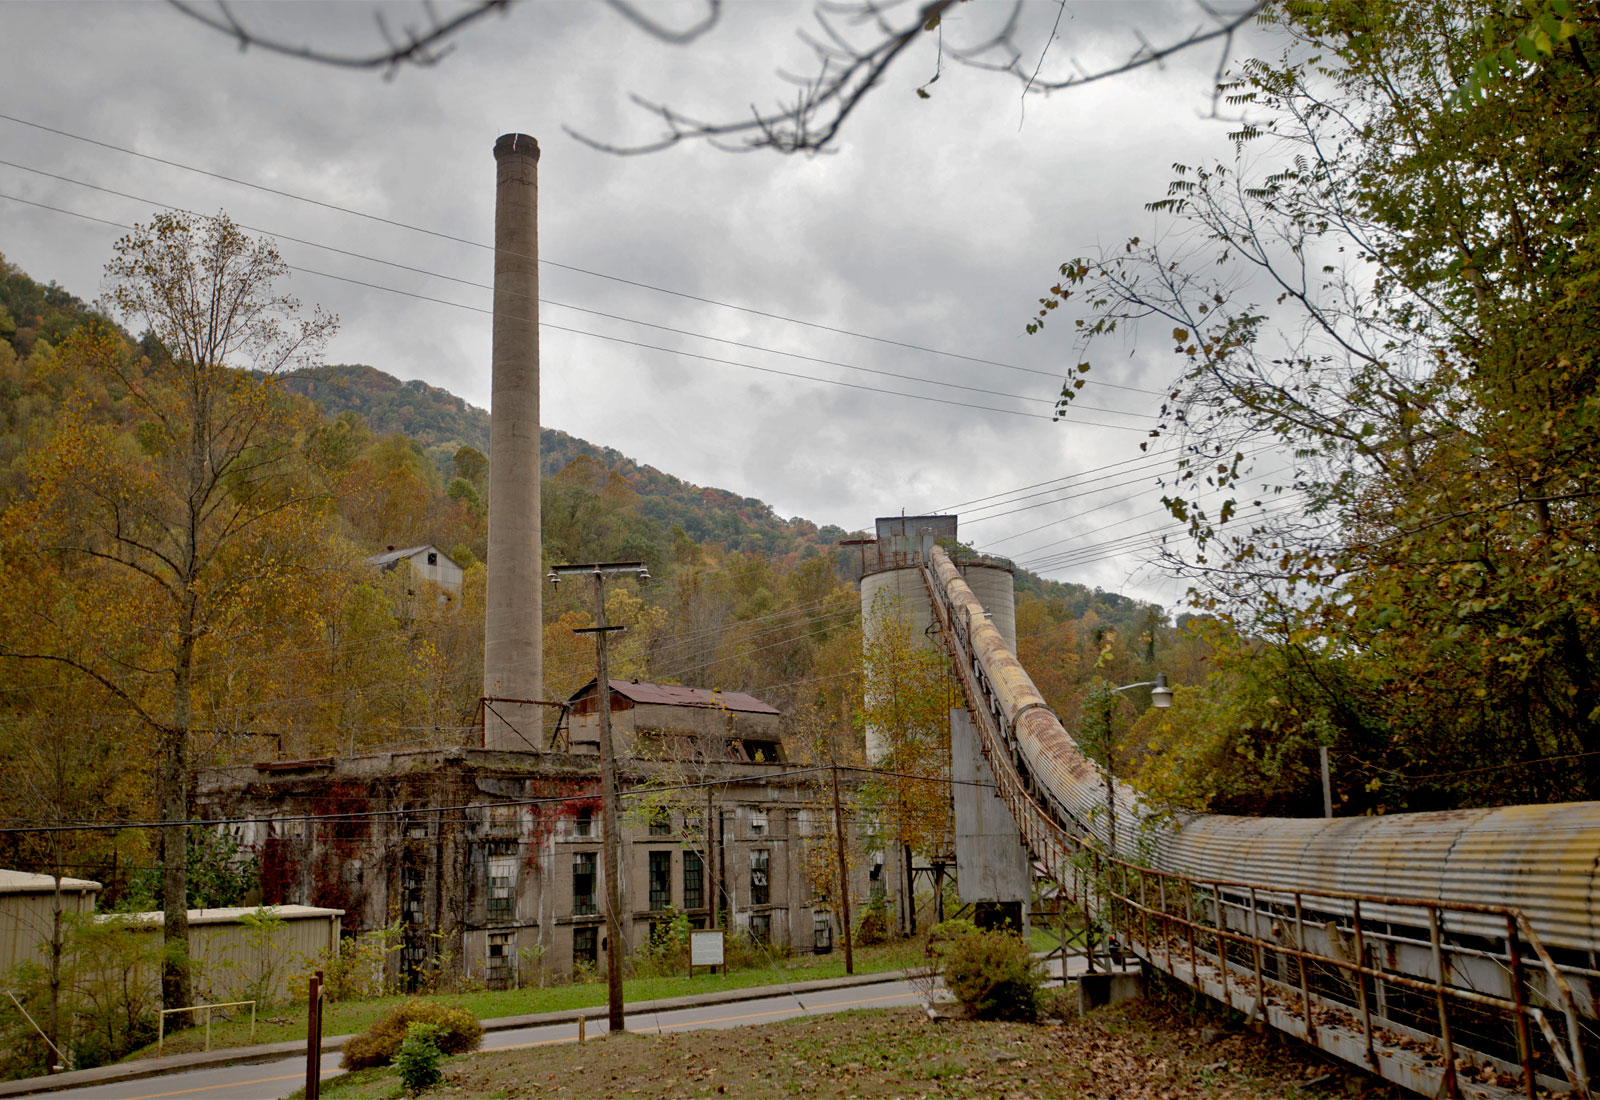 Abandoned coal mine among trees